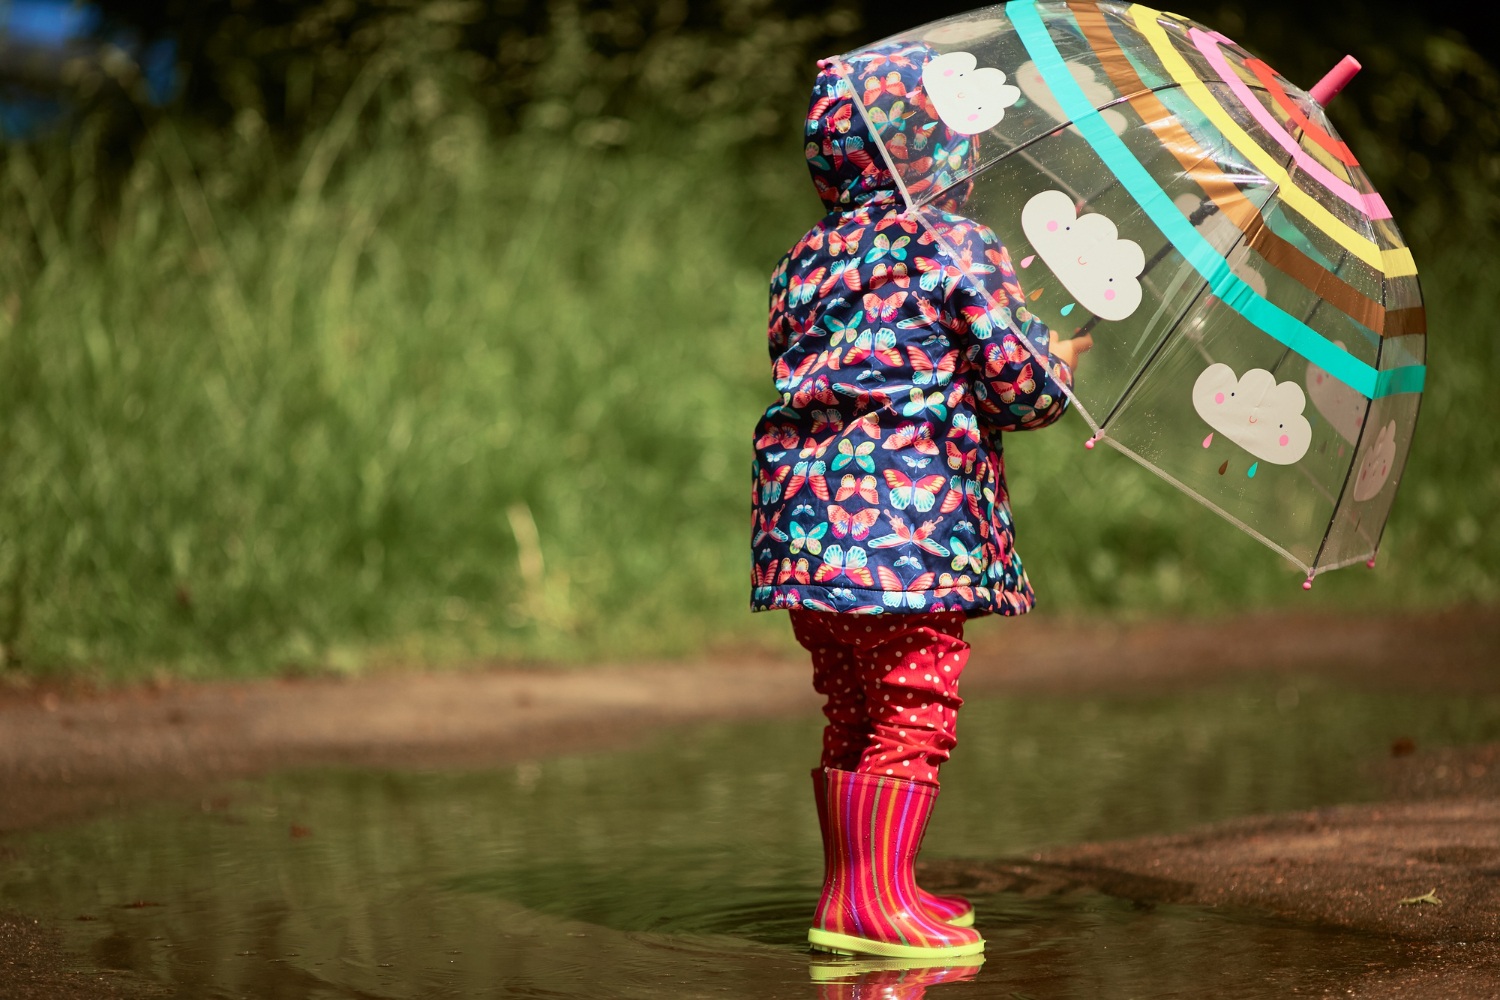 Készülj fel az őszre! - a legvarázslatosabb gyerek esőkabát és esernyő kínálat 